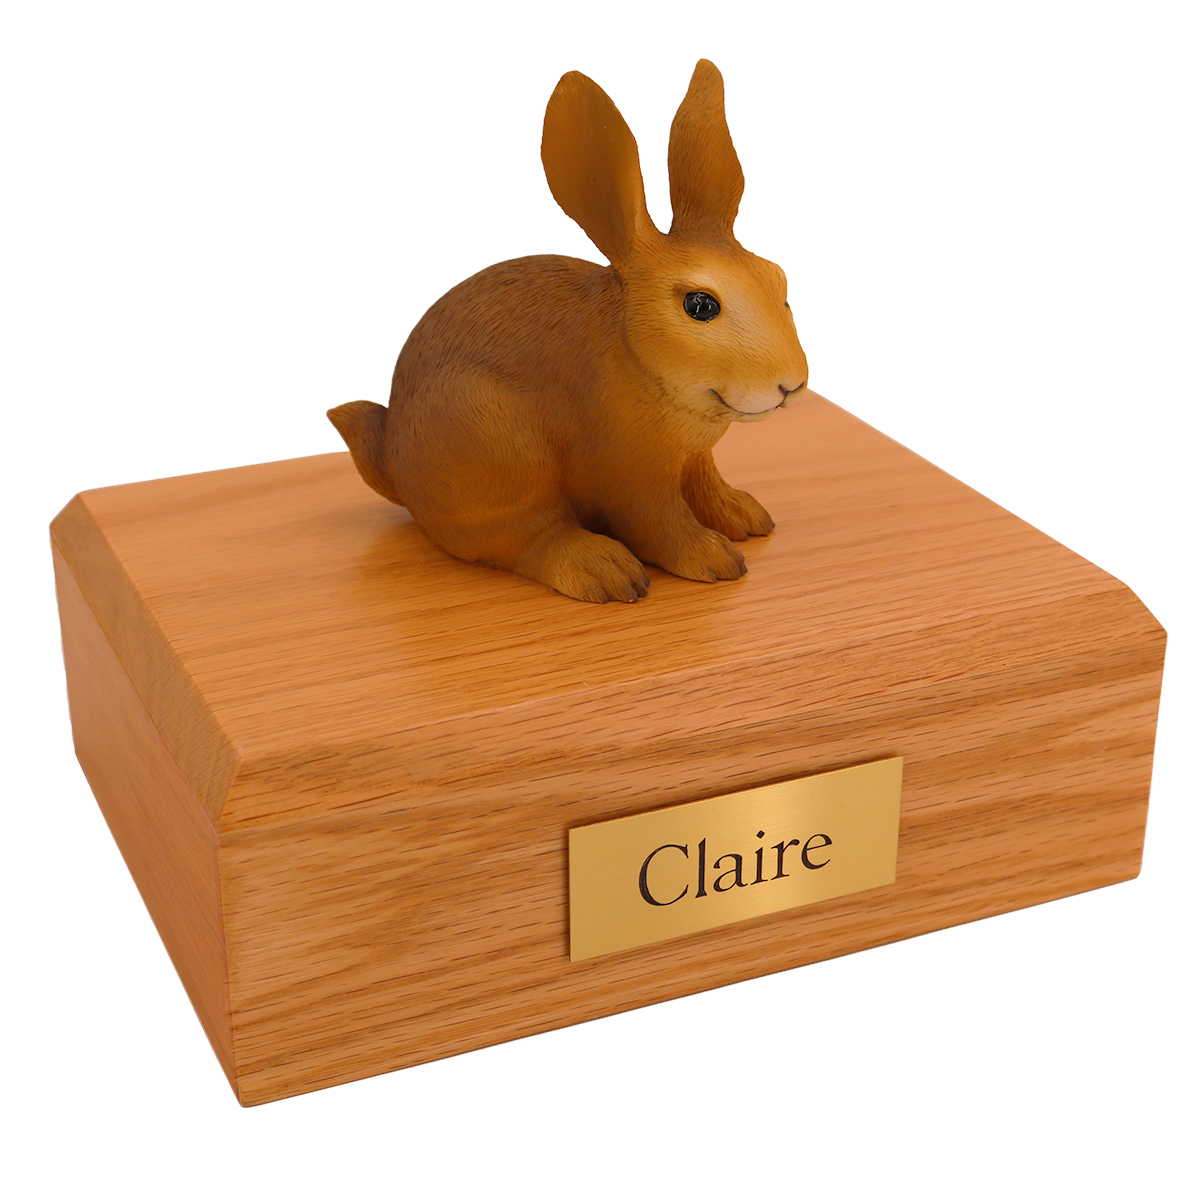 Rabbit, Brown - Figurine Urn